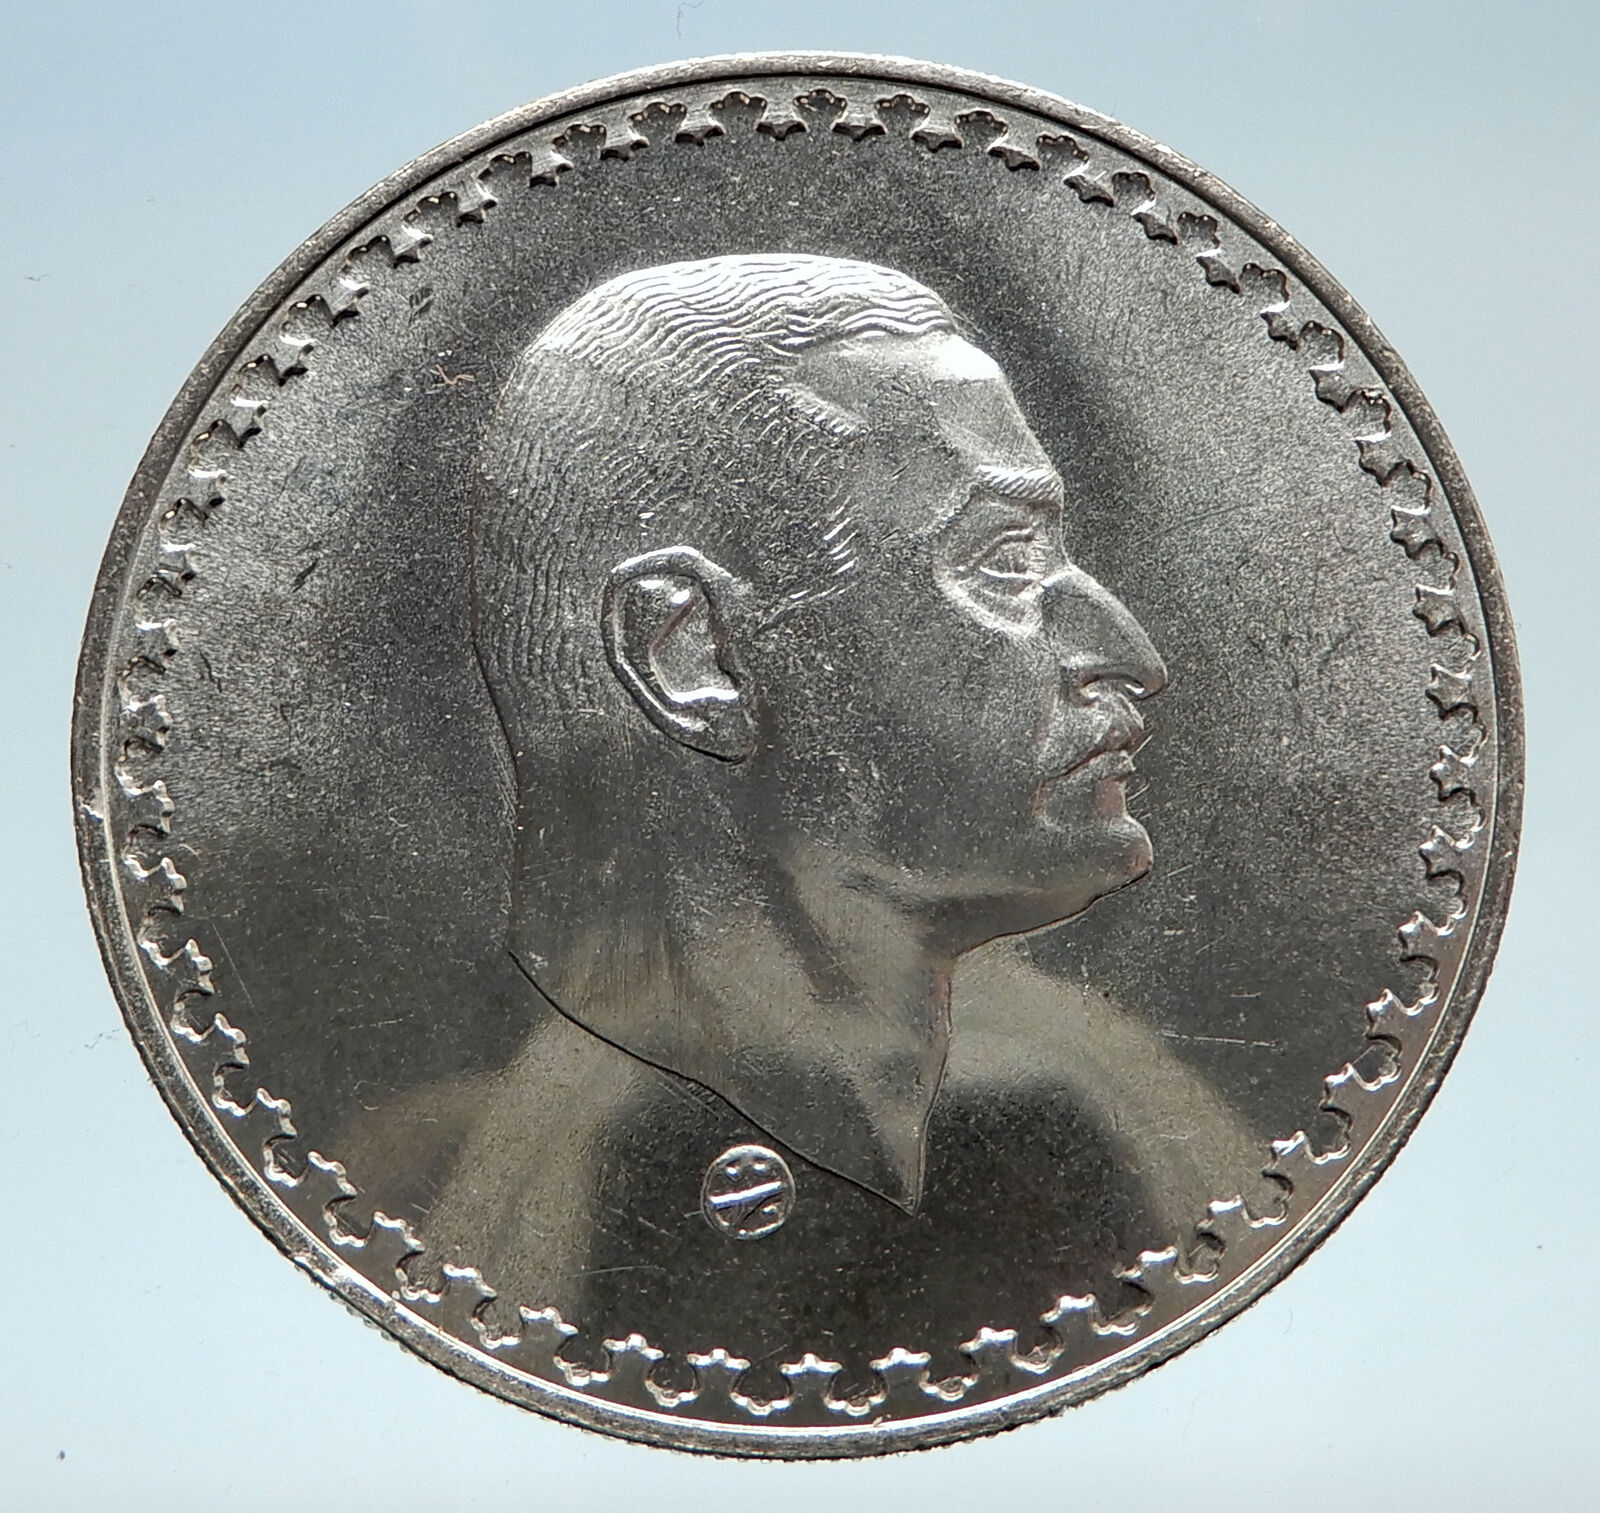 1970 EGYPT w President Nasser Hussein Genuine Antique Silver 1 Pound Coin i74934